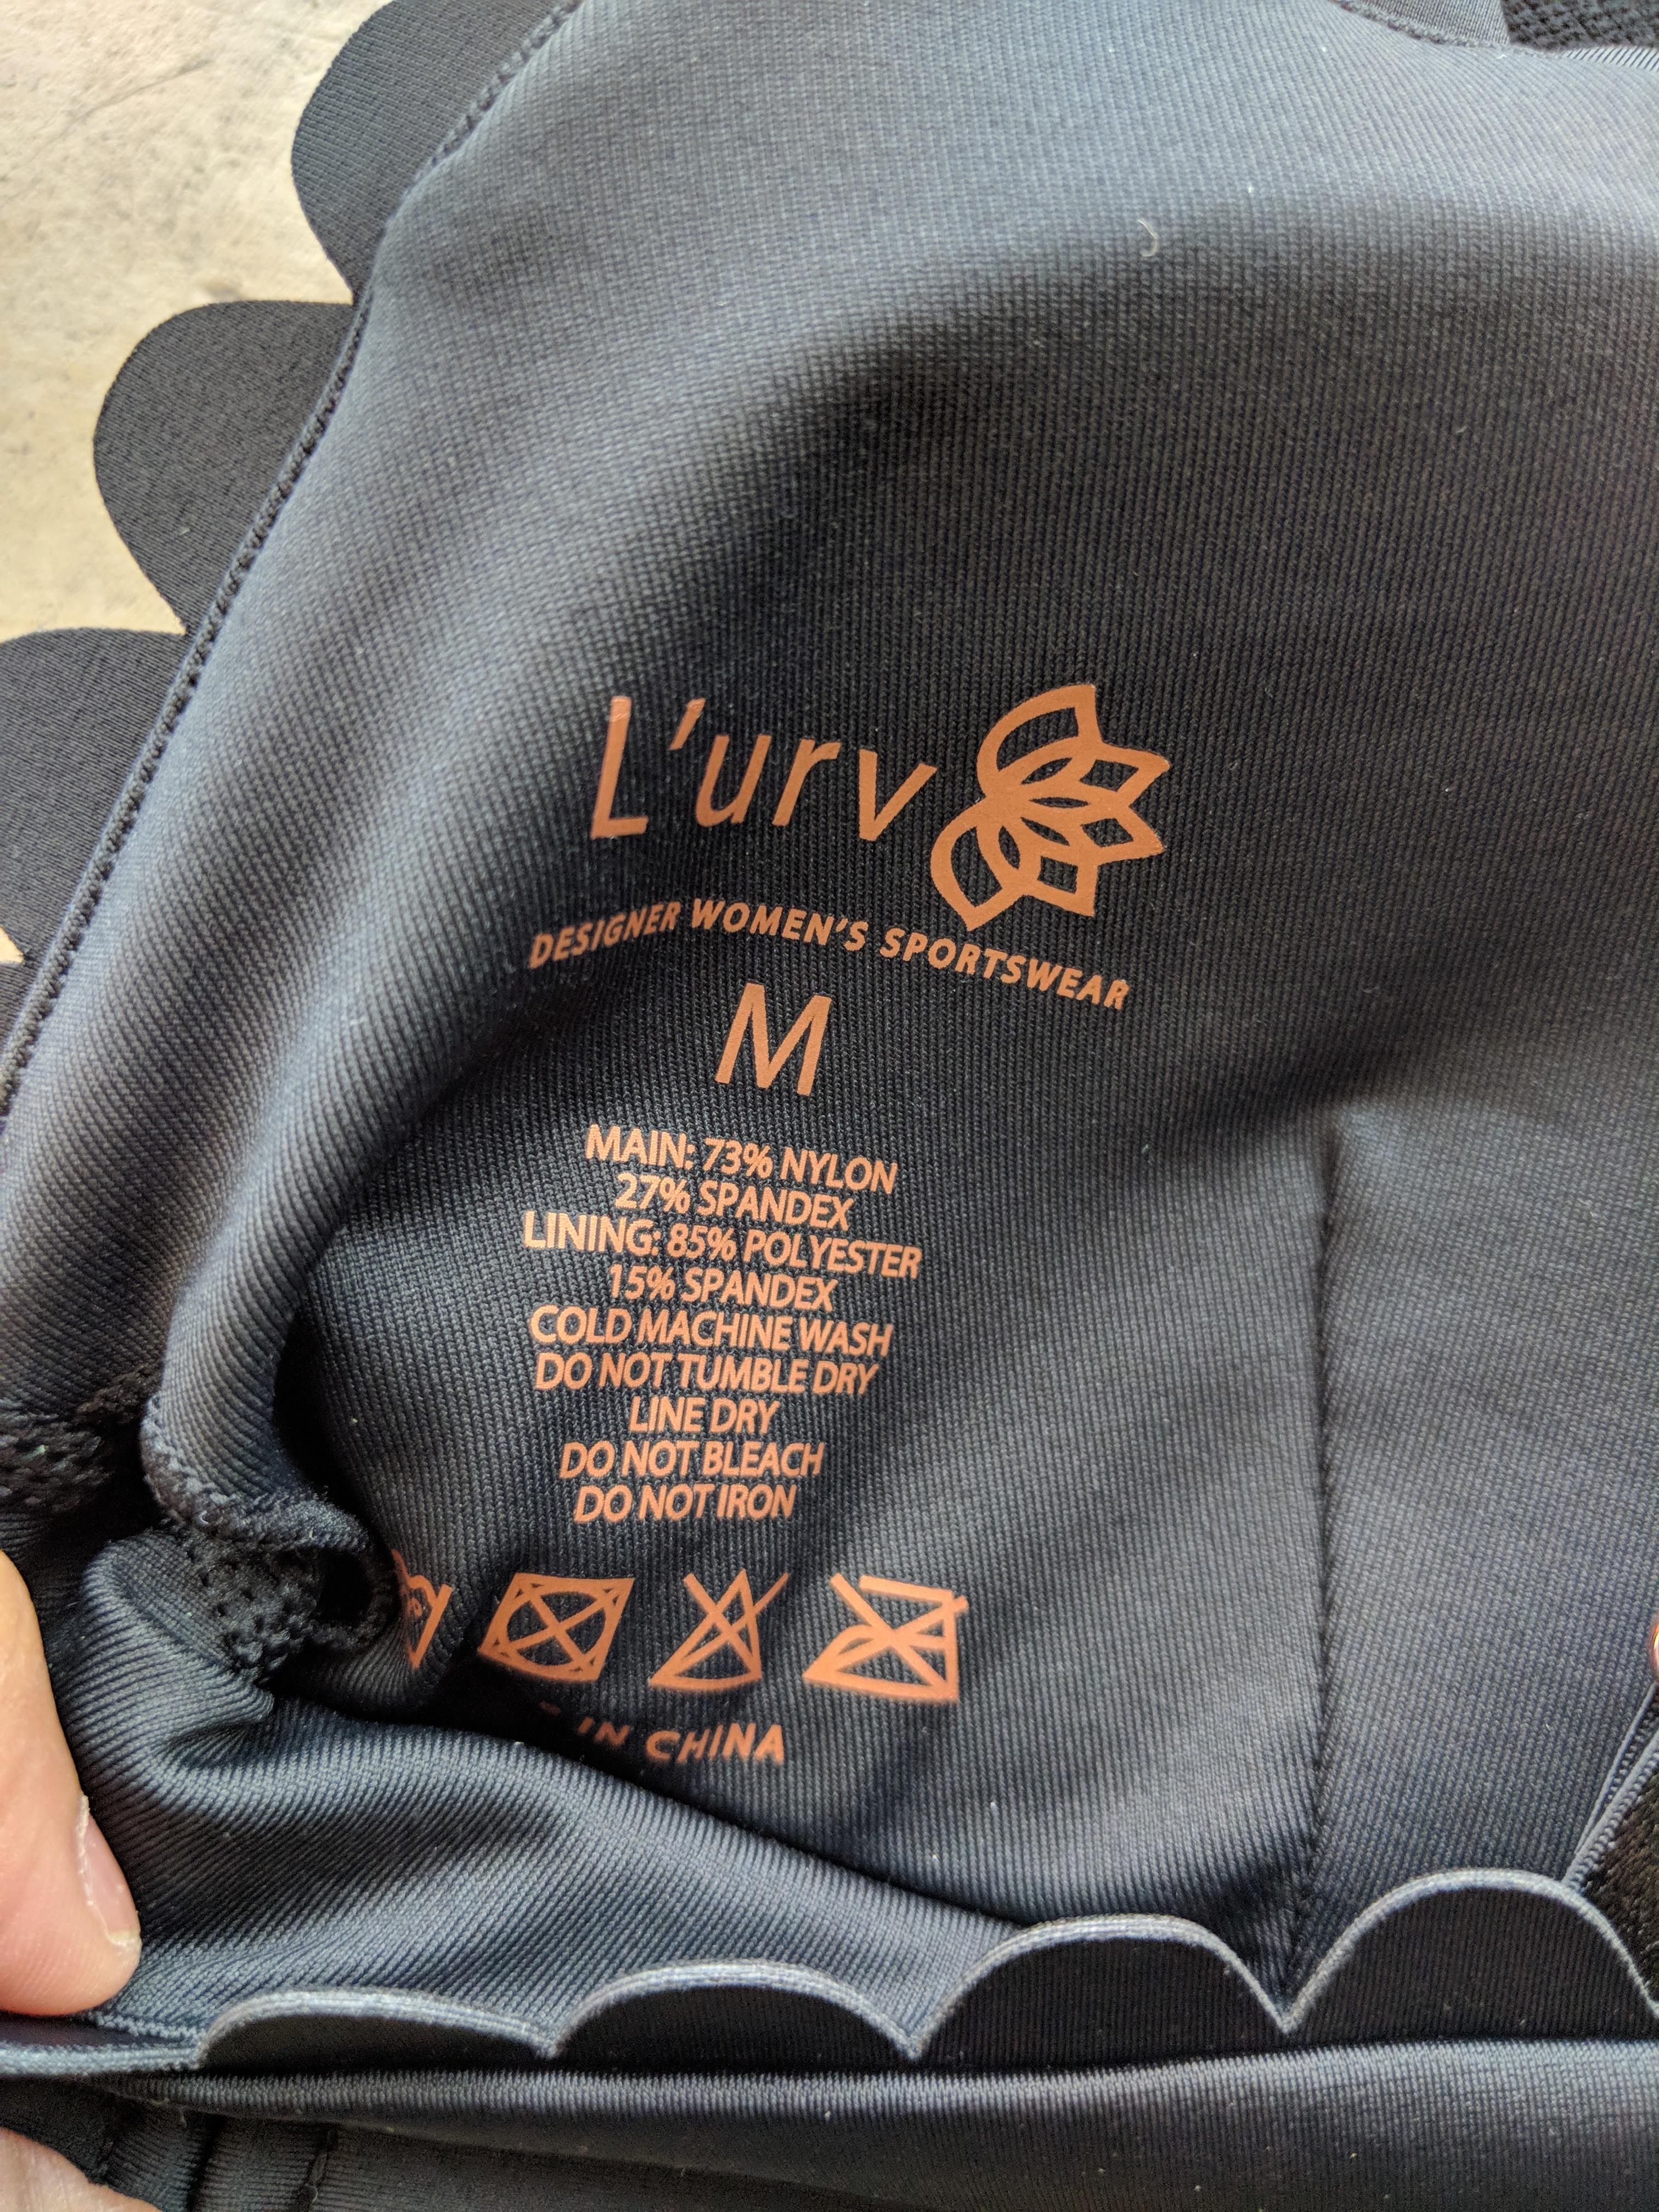 L'URV Activewear - I'm On Clouds Bralette - Label Detail